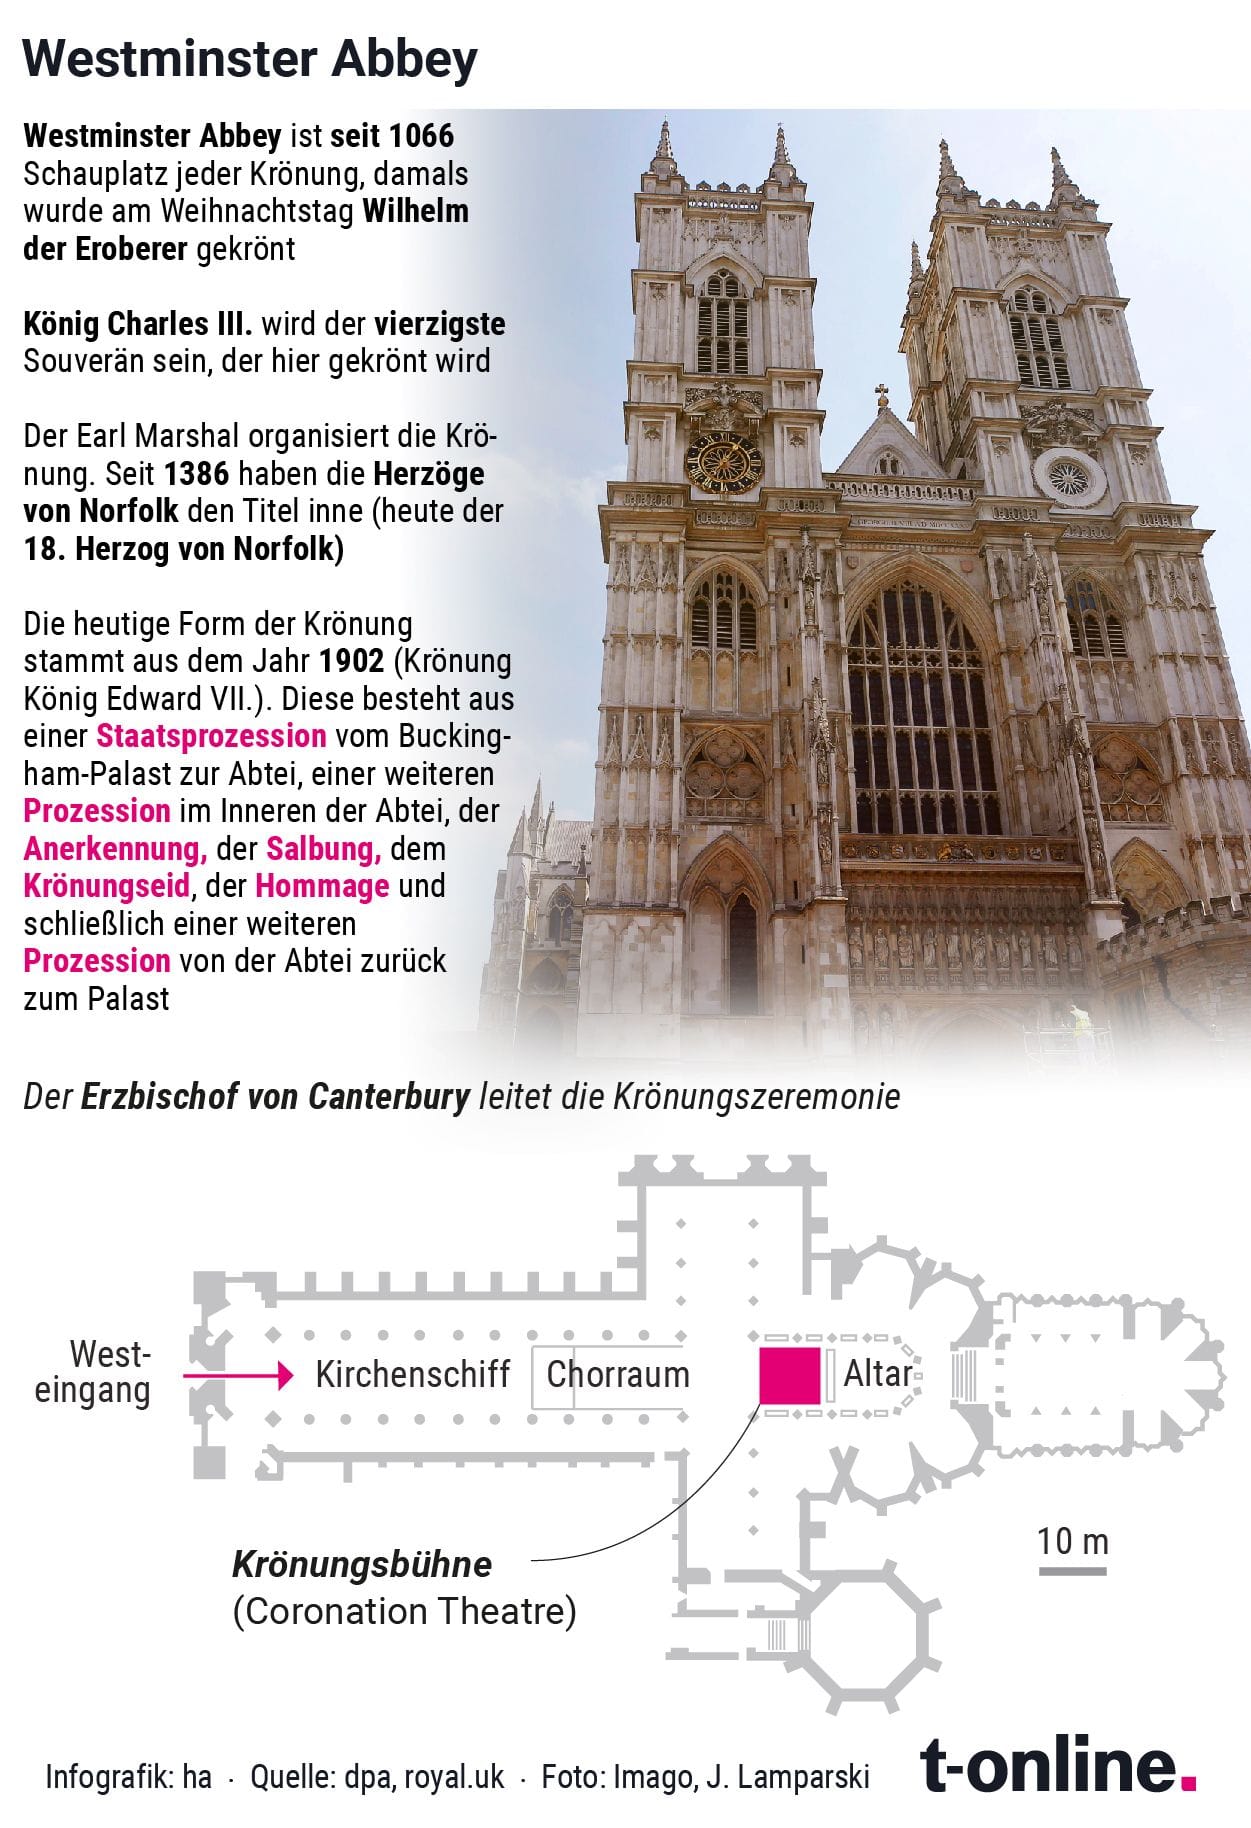 Die Westminster Abbey als zentraler Dreh- und Angelpunkt der Krönung